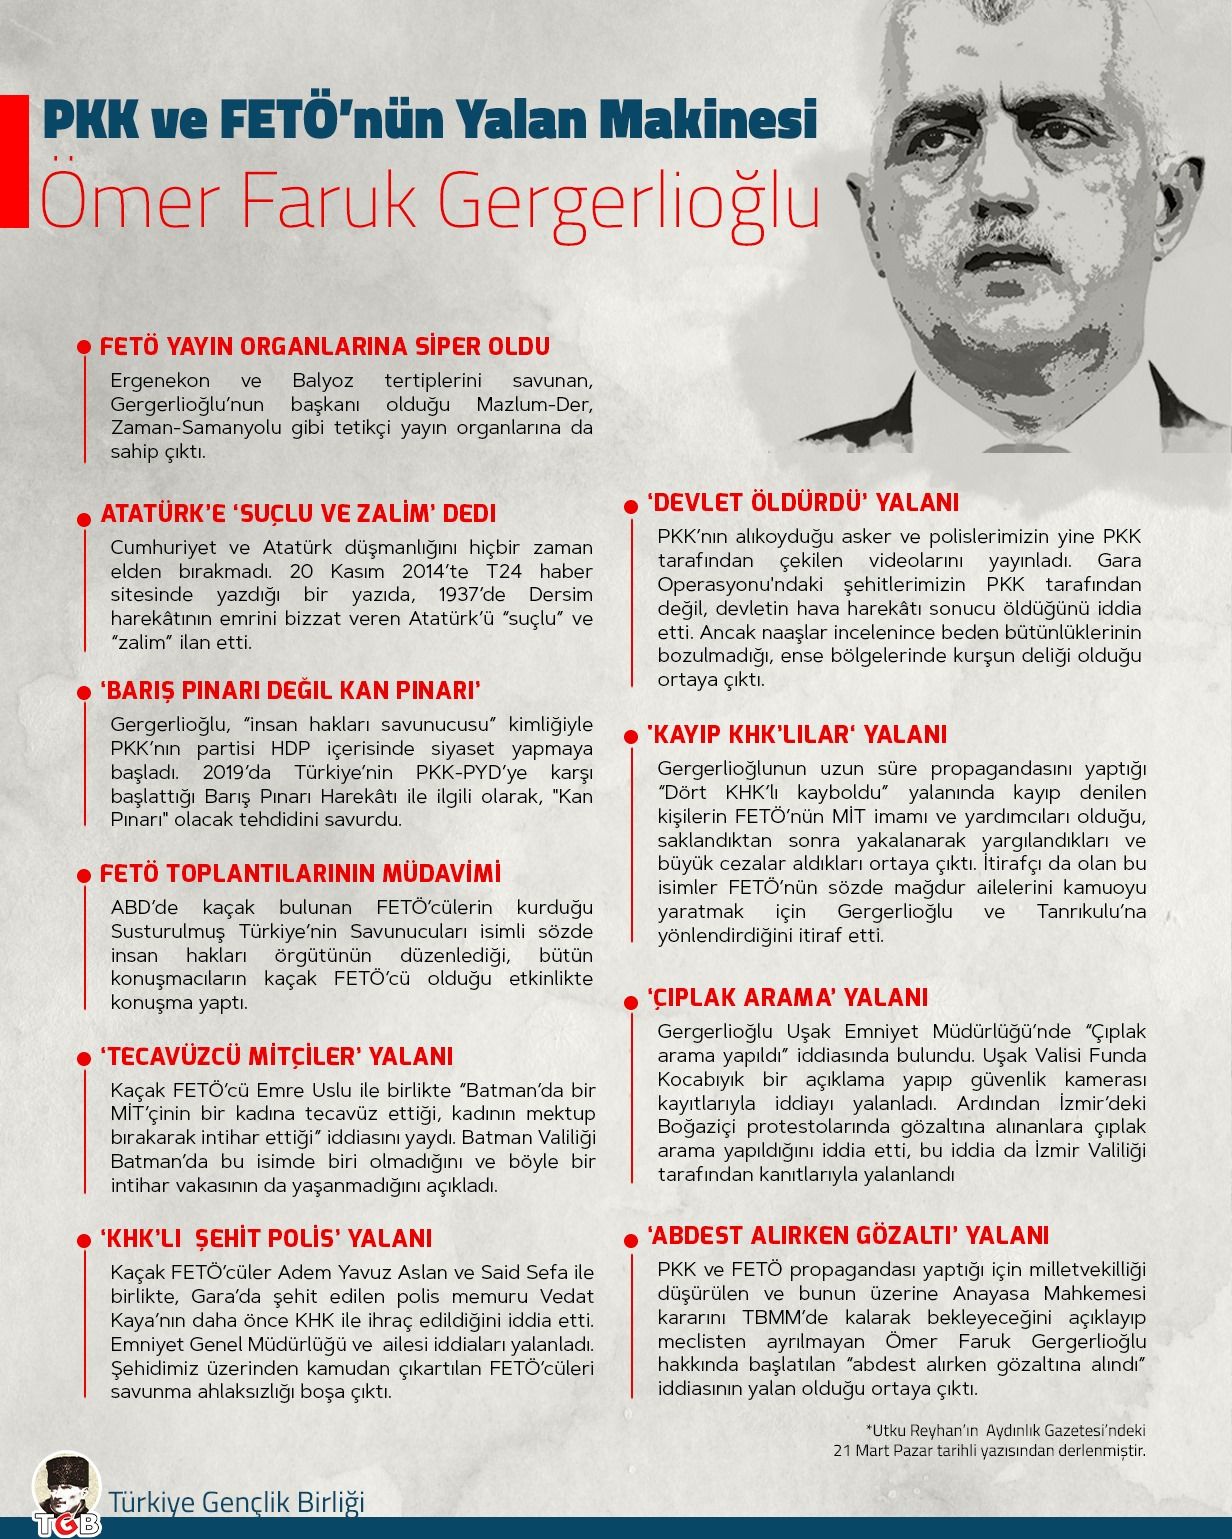 PKK'NIN ve FETÖ'NÜN YALAN MAKİNESİ: Ömer Faruk Gergerlioğlu